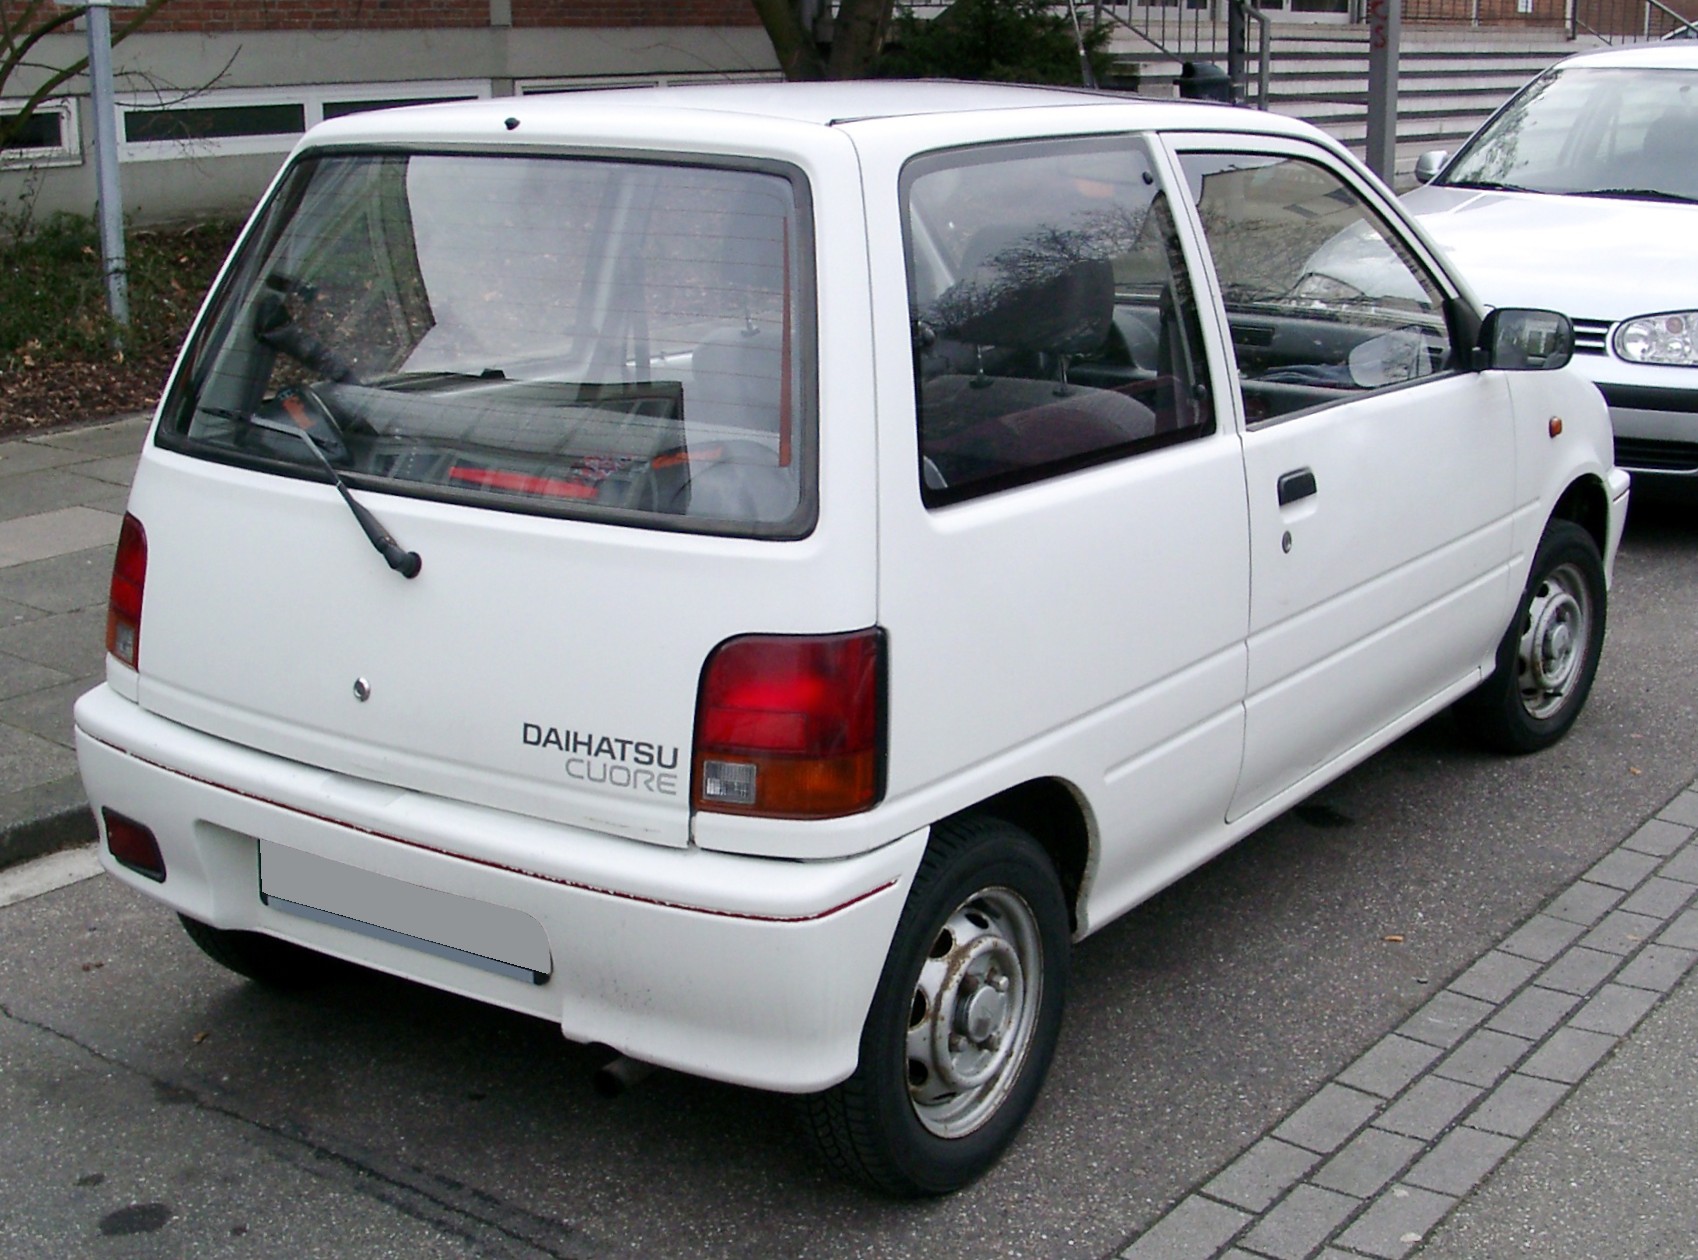 Daihatsu Cuore 1997 photo - 1